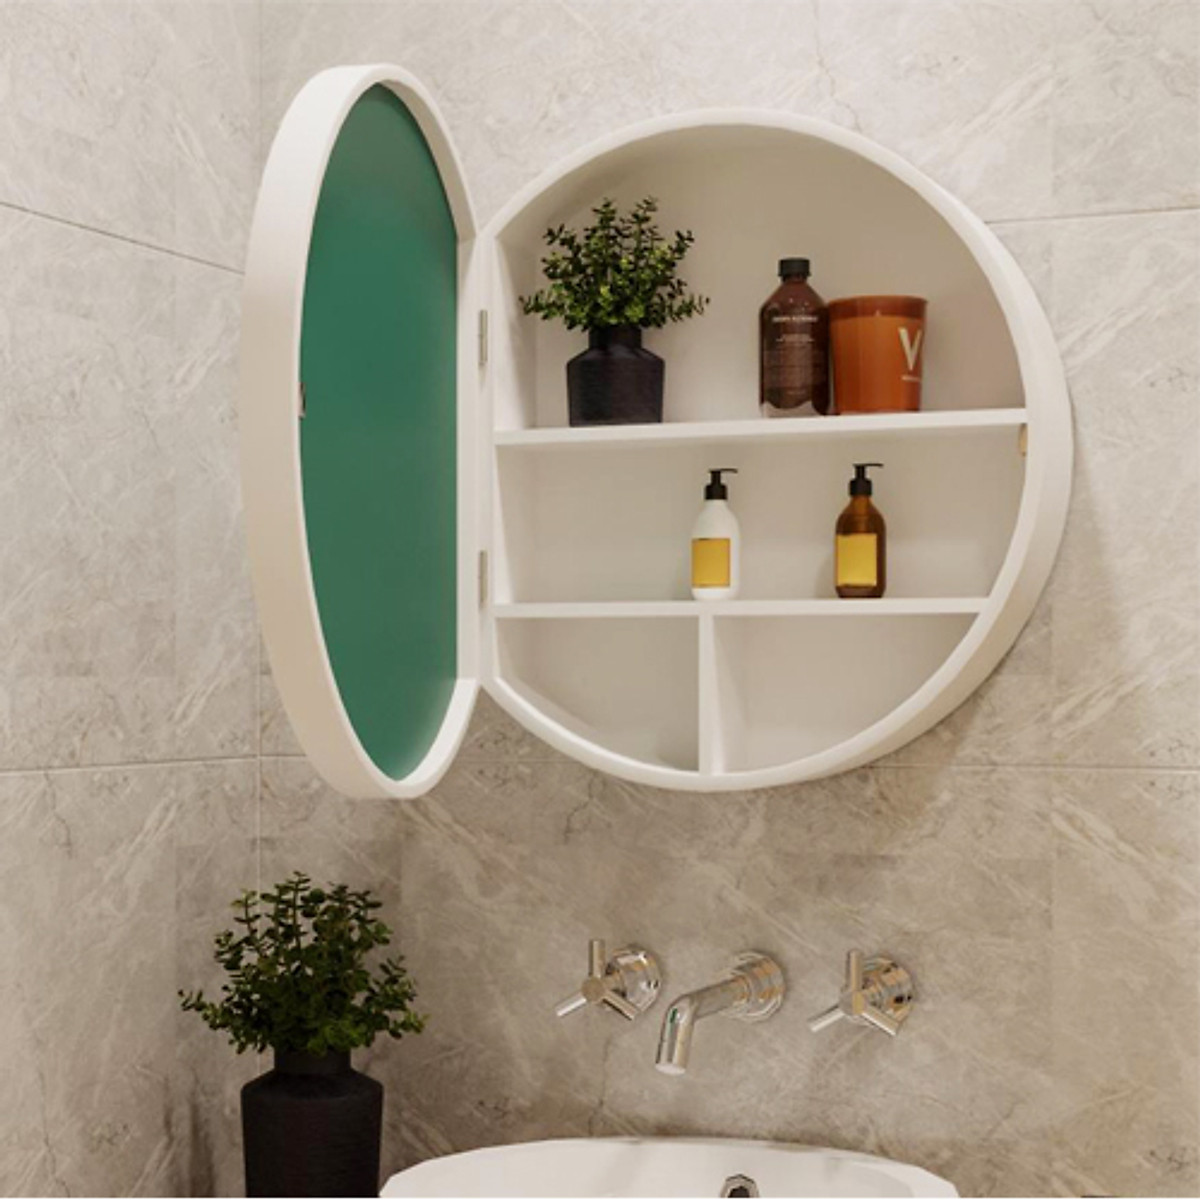 Tủ gương tròn treo tường phòng tắm NT05 là một sản phẩm tuyệt vời để giúp tăng thêm vẻ đẹp của căn phòng tắm của bạn. Tủ gương này được thiết kế nhỏ gọn, dễ dàng lắp đặt và đặc biệt là rất thẩm mỹ. Đây là sự lựa chọn hoàn hảo cho những ai yêu thích vẻ đẹp đơn giản và sang trọng. Hãy đến với chúng tôi để sở hữu ngay sản phẩm này.